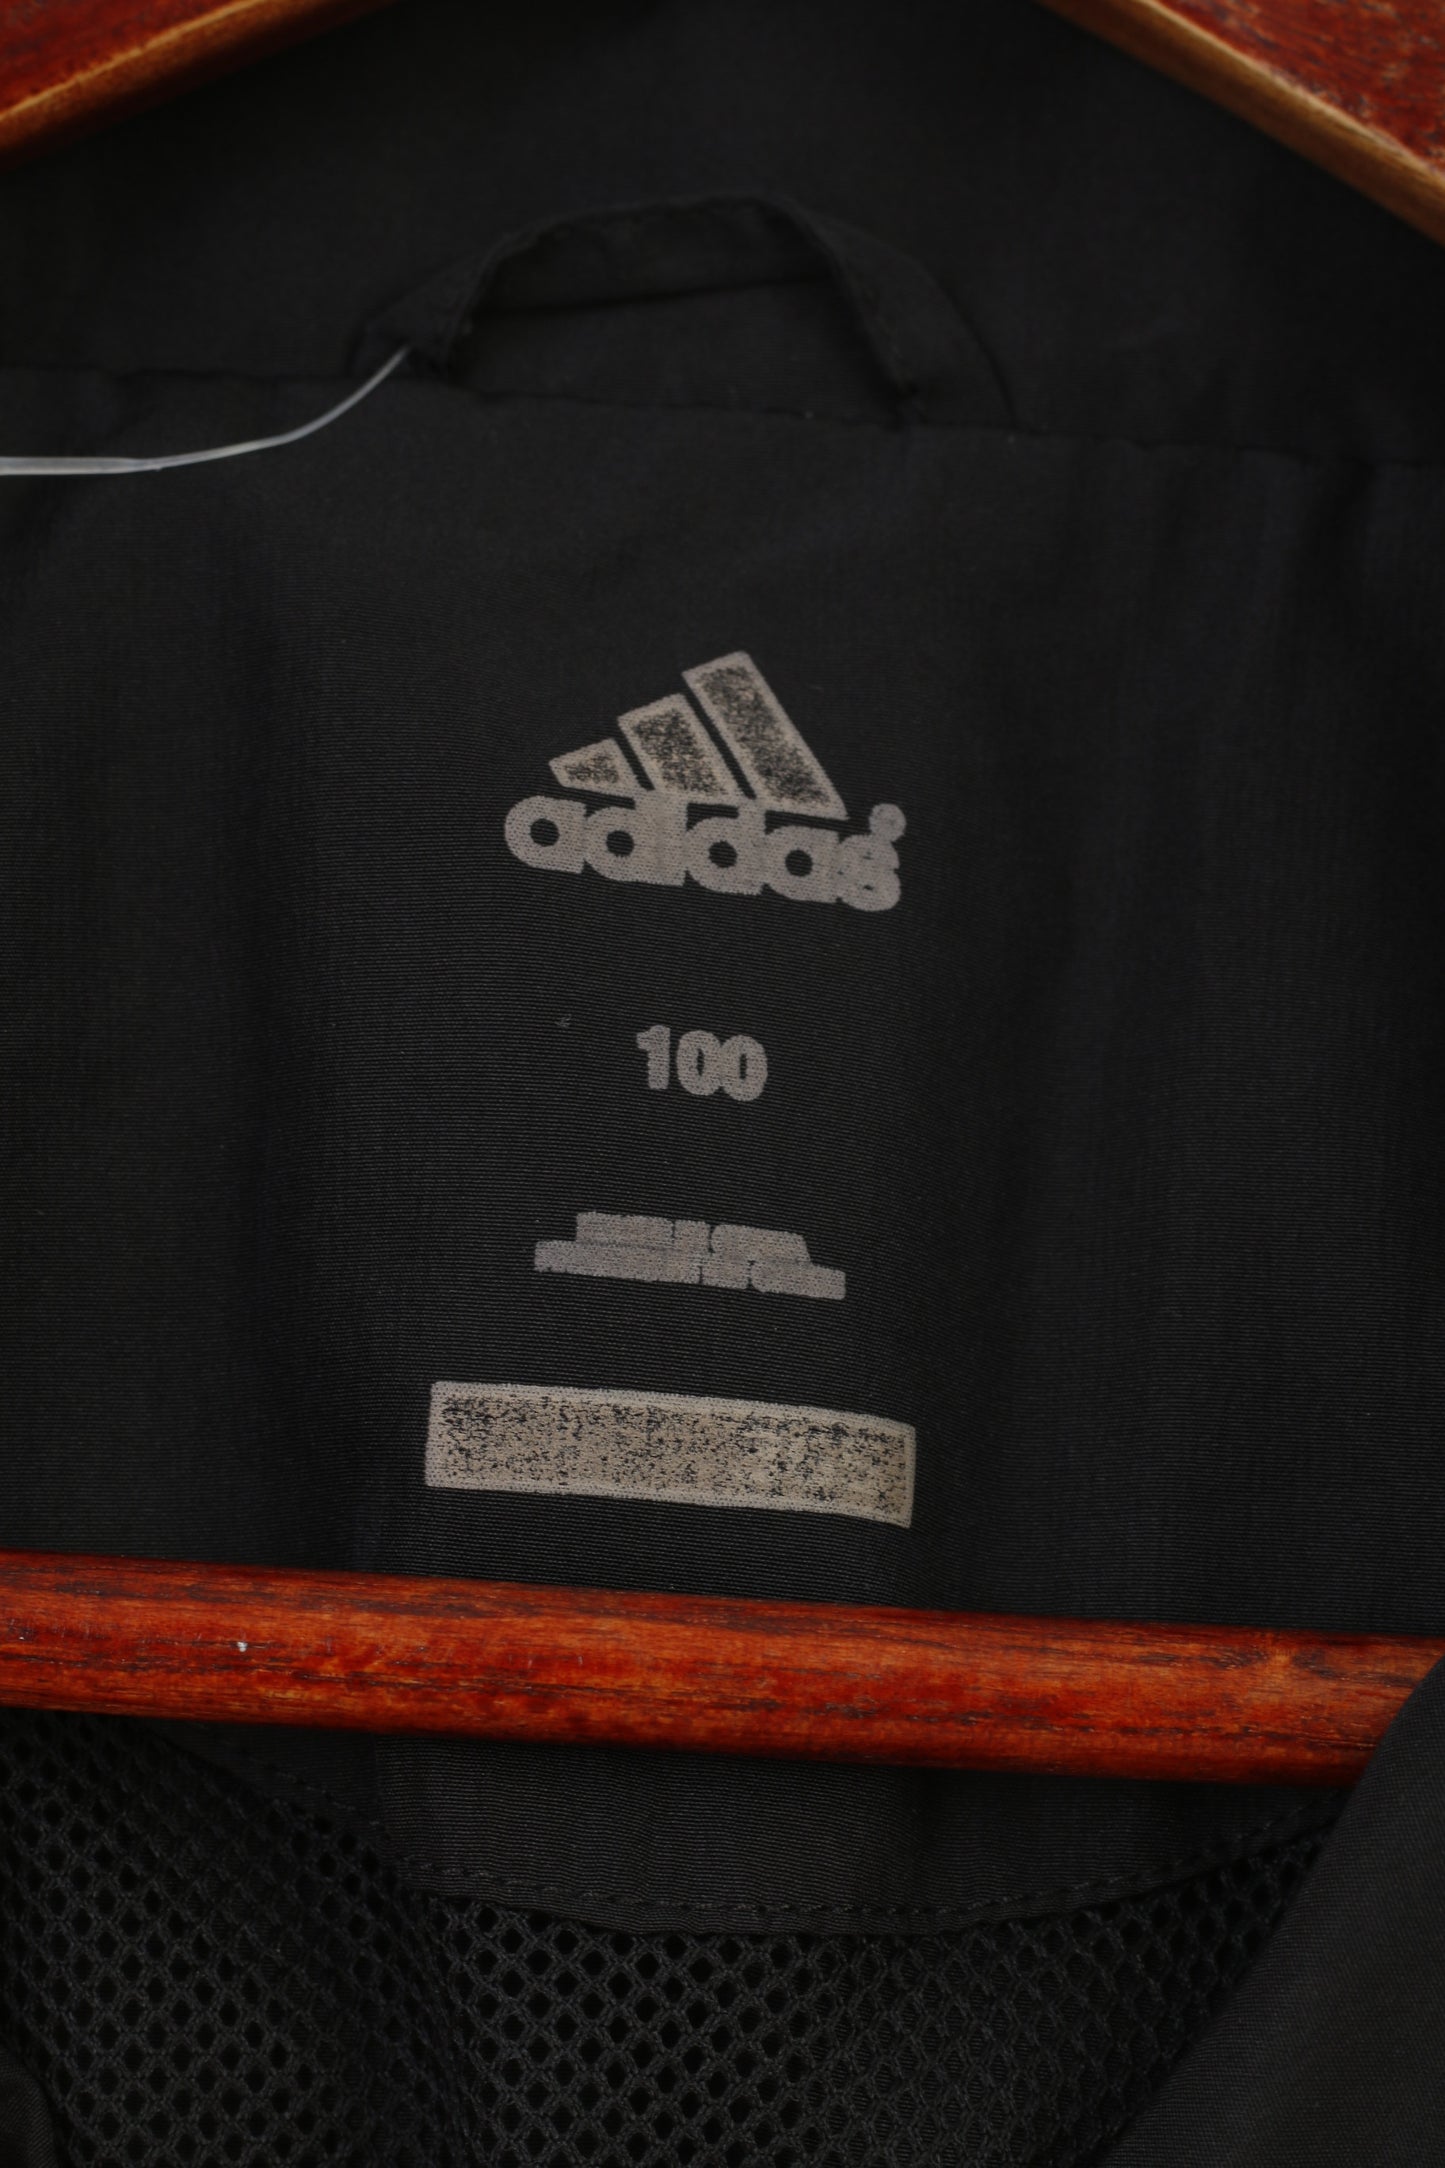 Giacca Adidas 178 da ragazzo leggera nera con cerniera intera Sportswear Clima Cool Vintage Top 